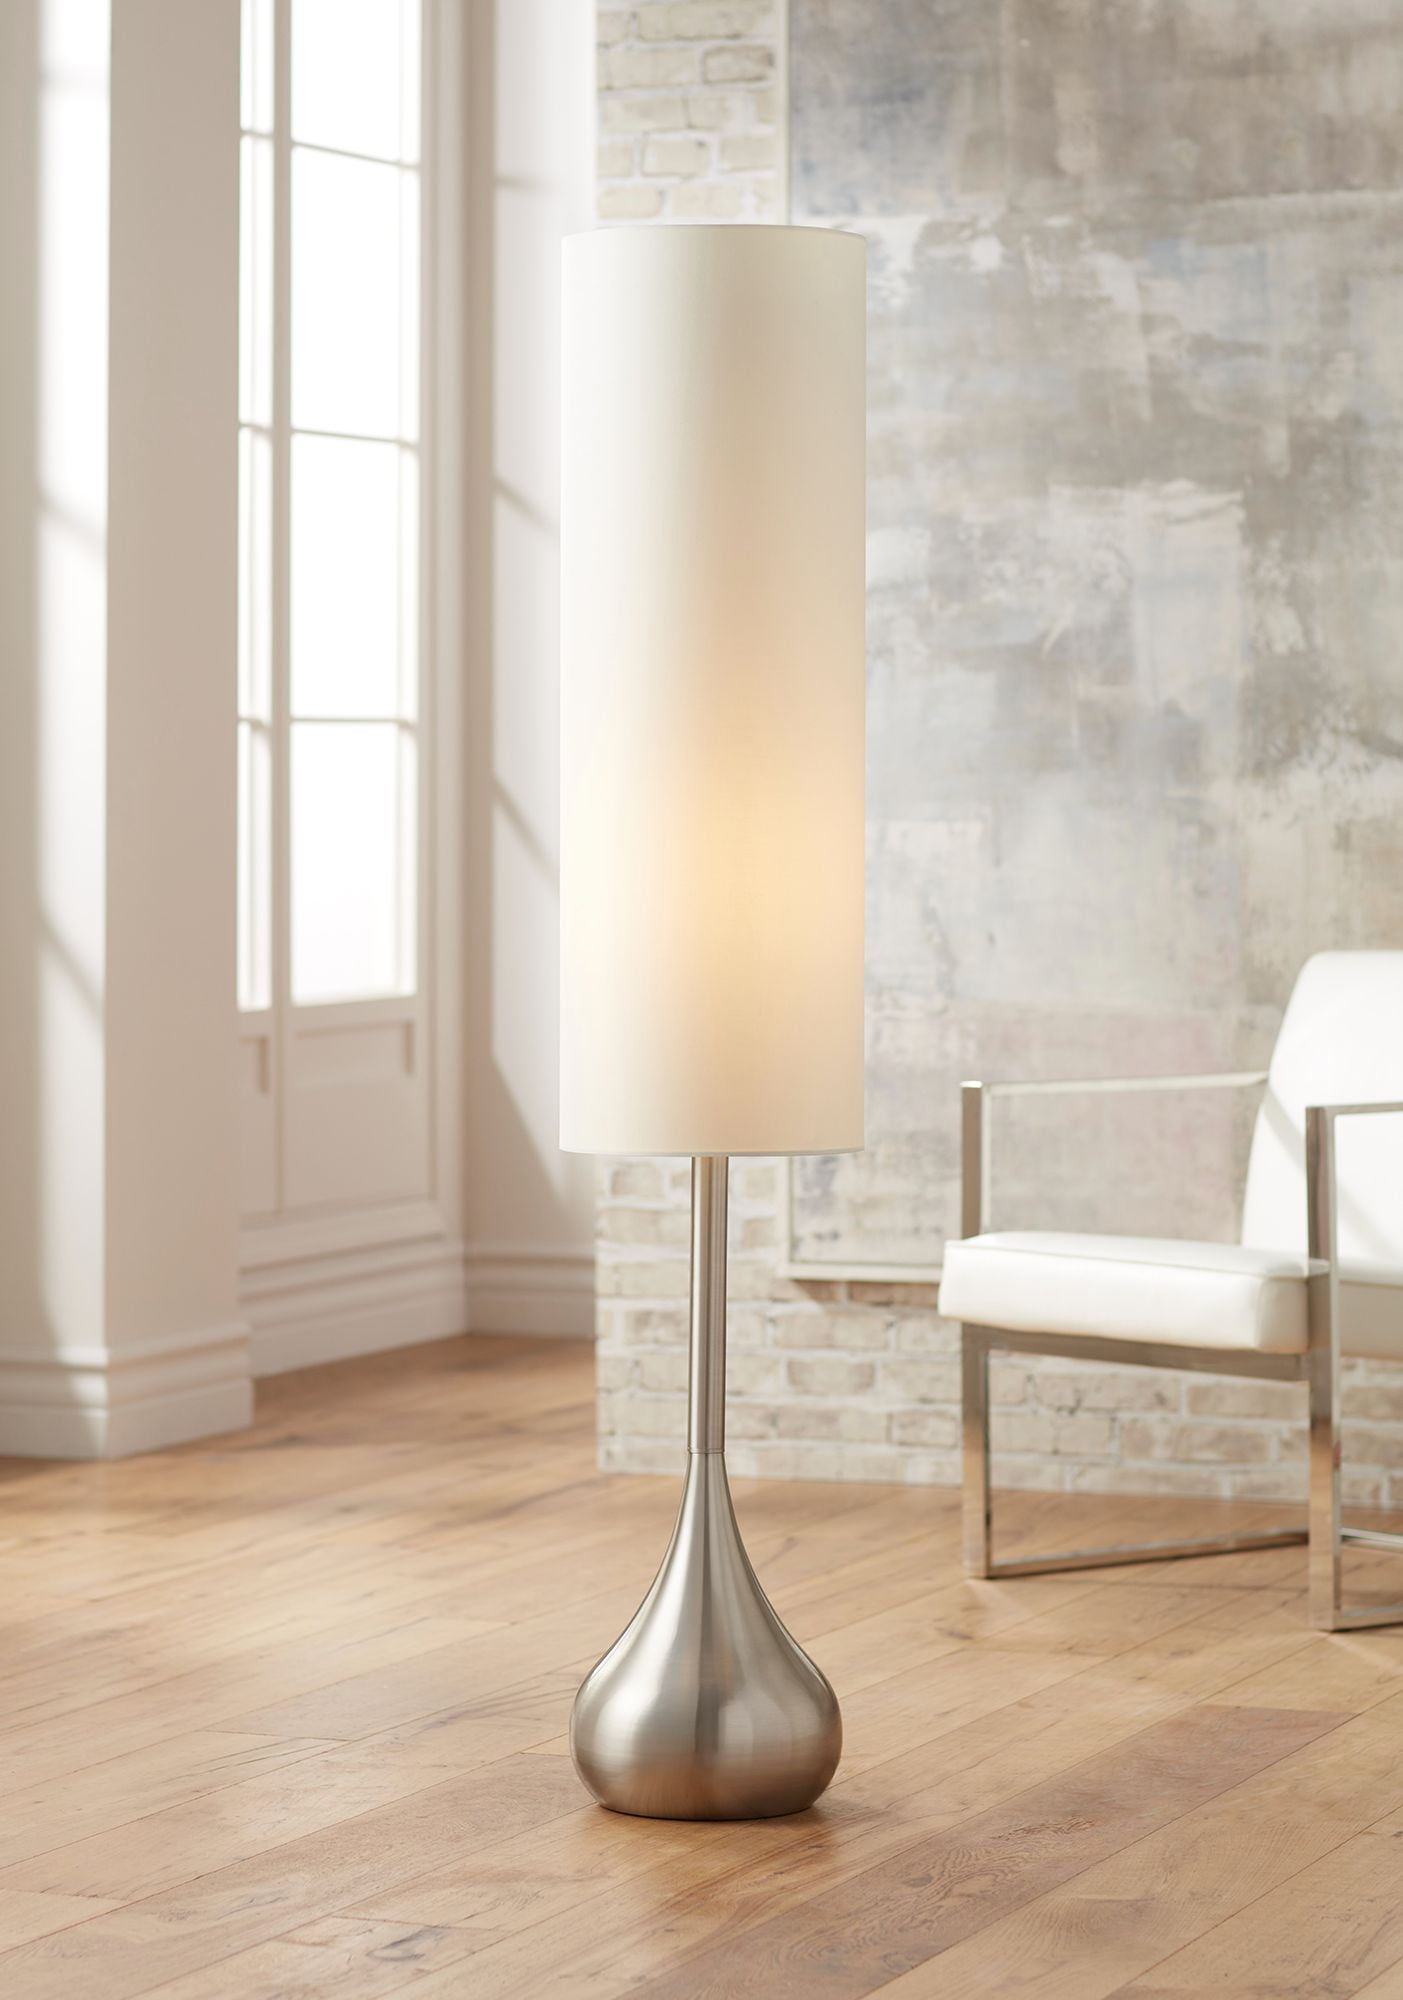 Possini Euro Design Mid Century Modern Floor Lamp Brushed Steel